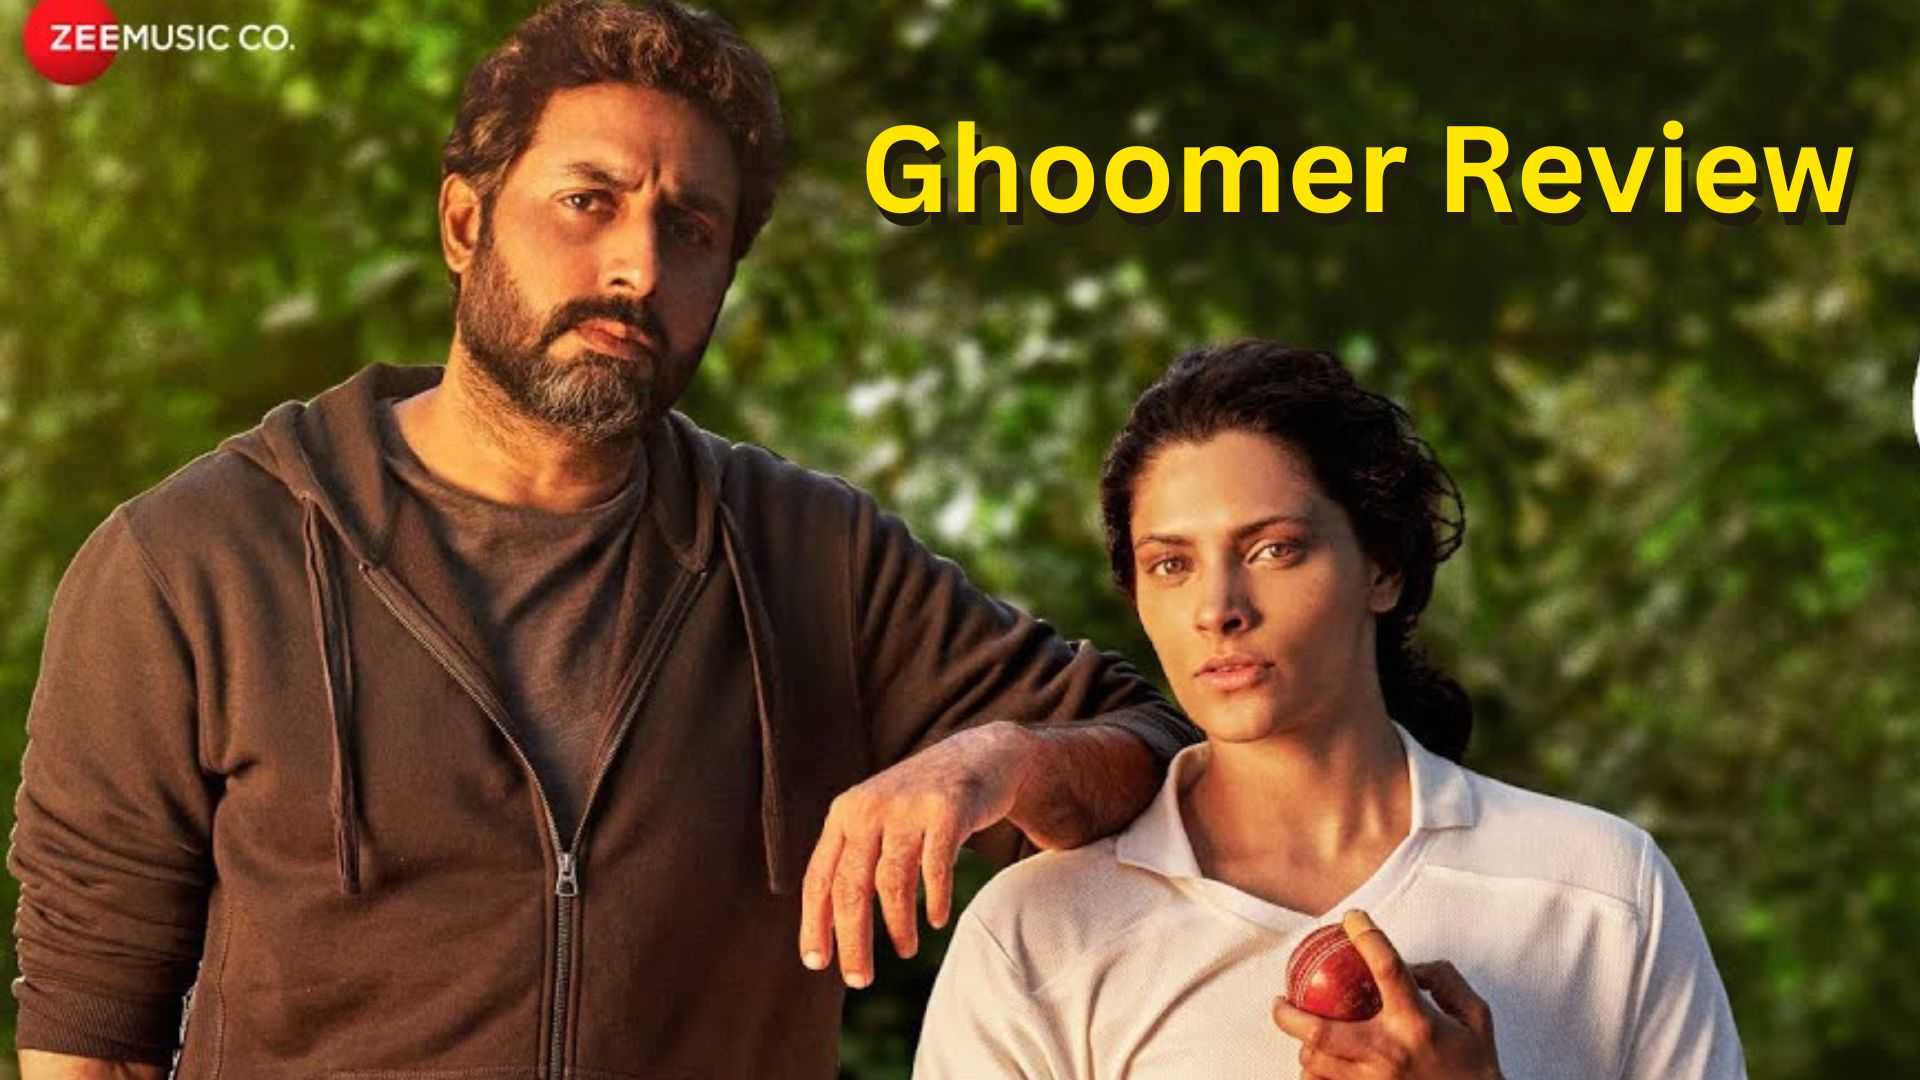 घूमर रिव्यू: अभिषेक बच्चन और सैयामी खेर की फिल्म है मोटिवेशन का तगड़ा डोज